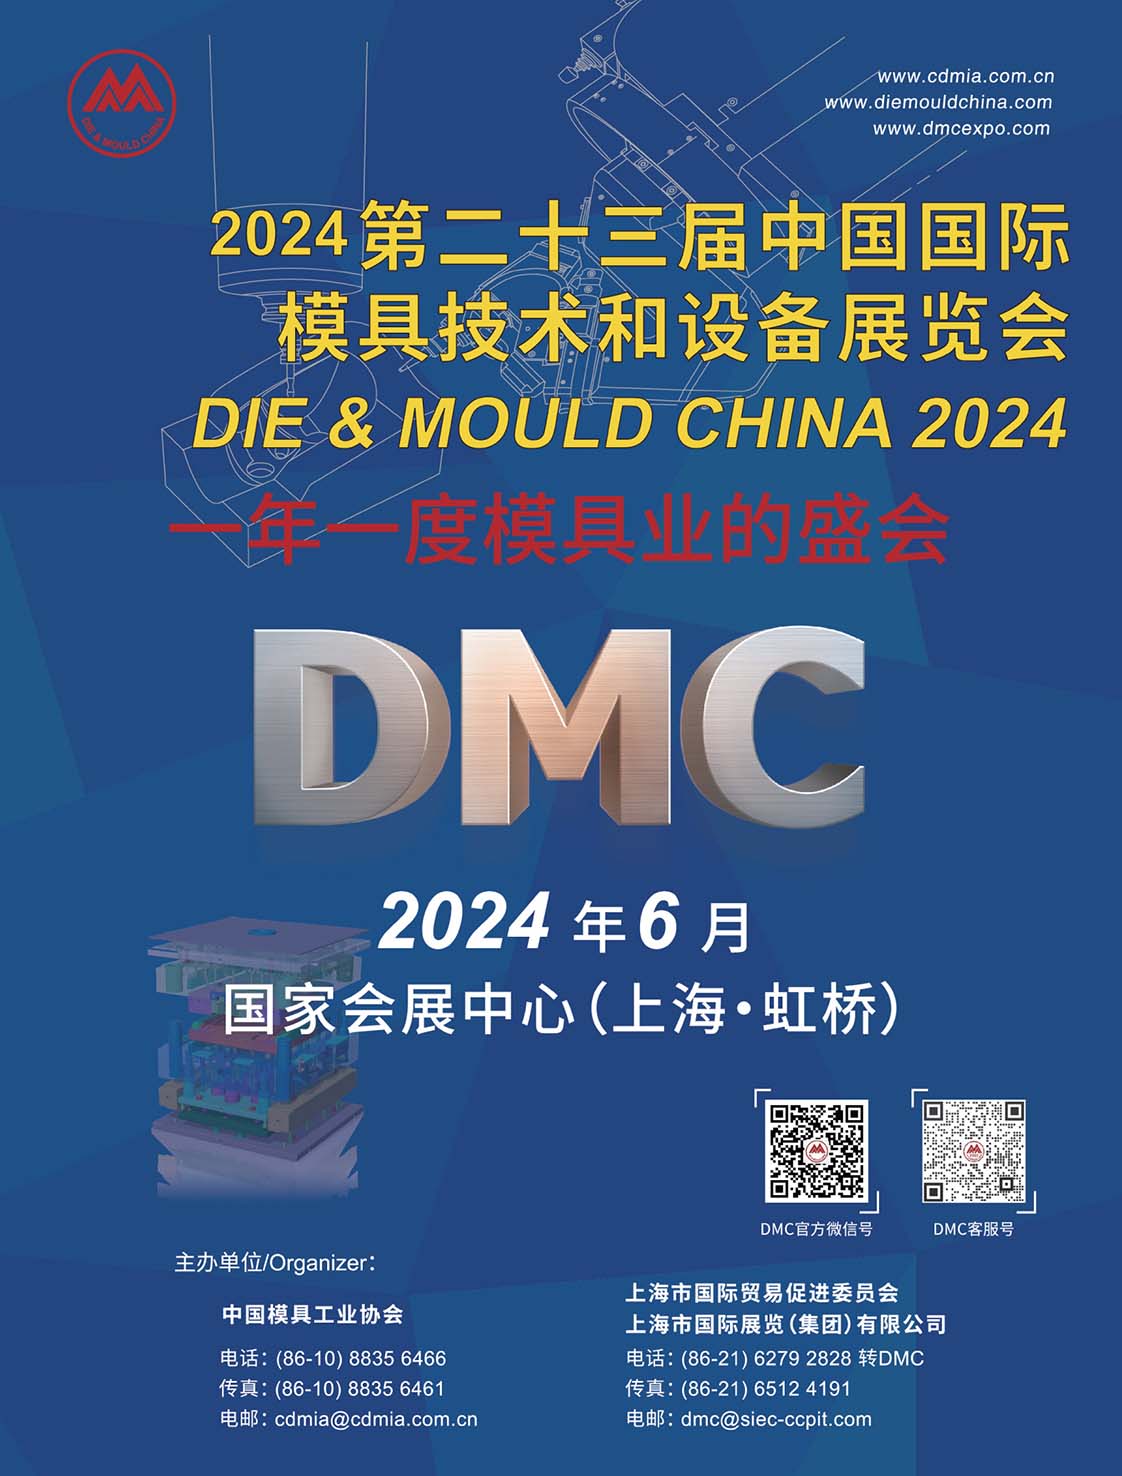 2023 台灣工具機 & 模具暨製品總覽